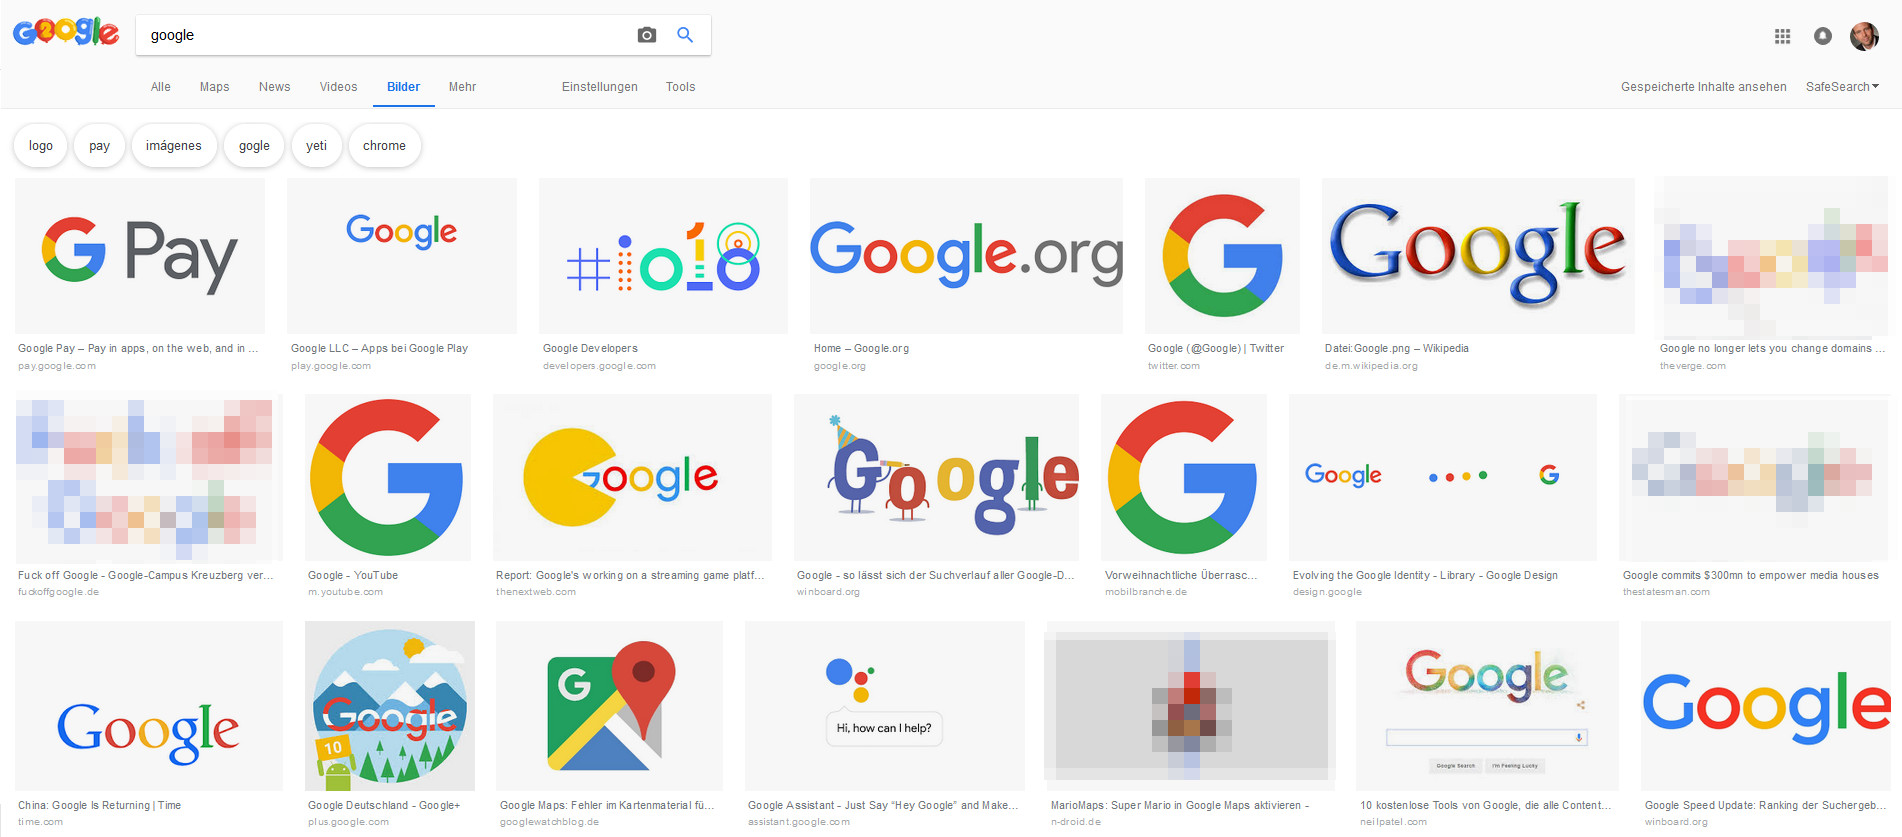 Google: neue Bildersuche vo September 2018